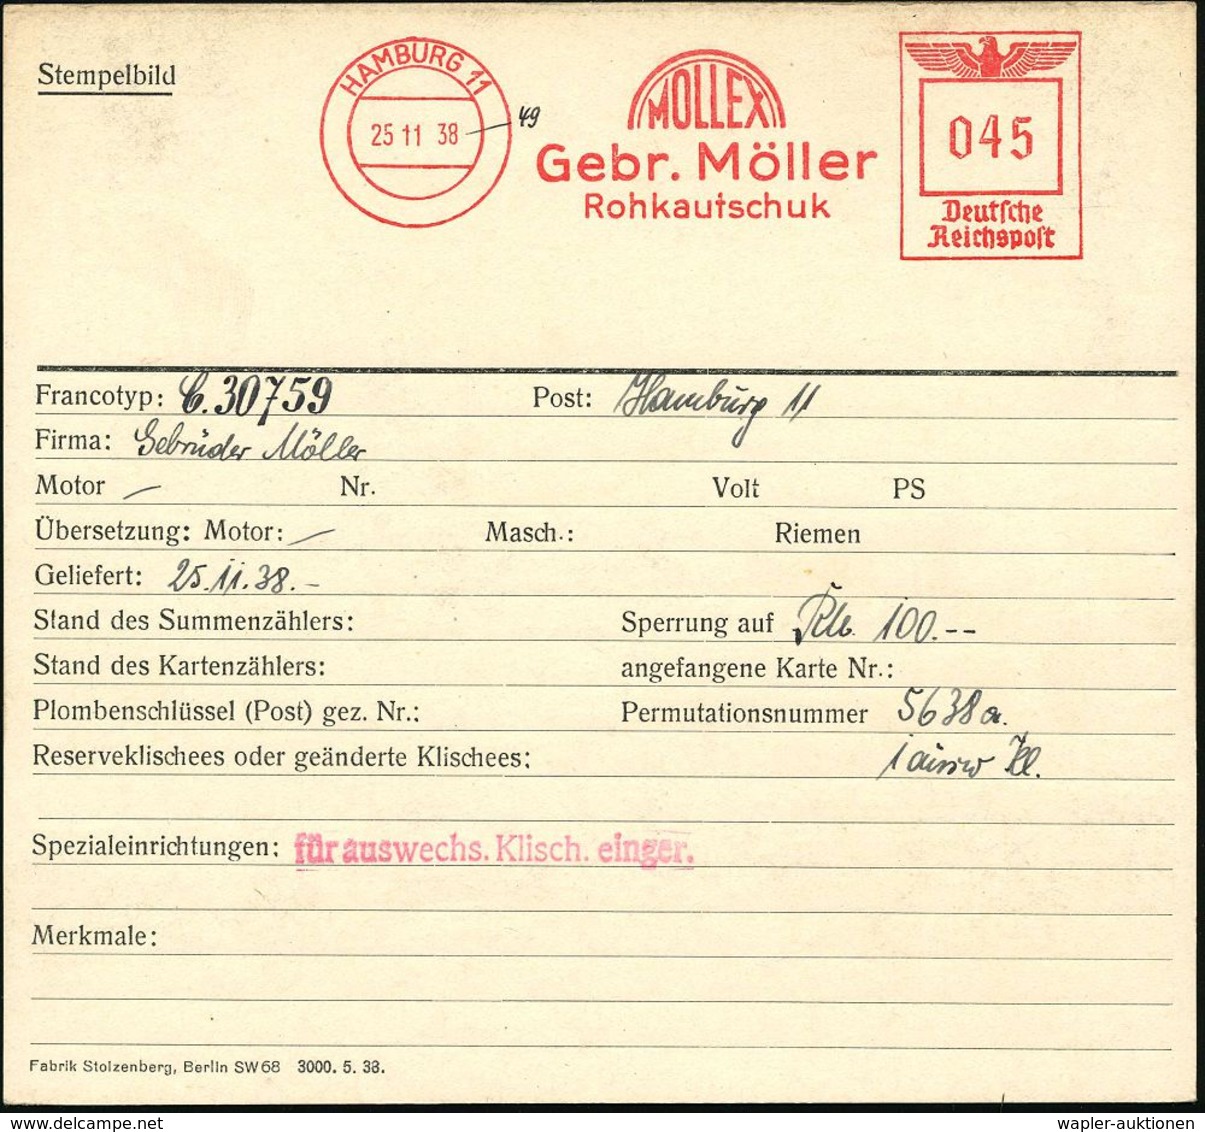 GUMMI / KAUTSCHUK : HAMBURG 11/ MOLLEX/ Gebr.Möller/ Rohkautschuk 1938 (25.11.) AFS 045 Pf., Archivmuster "Reichsadler"  - Chimie